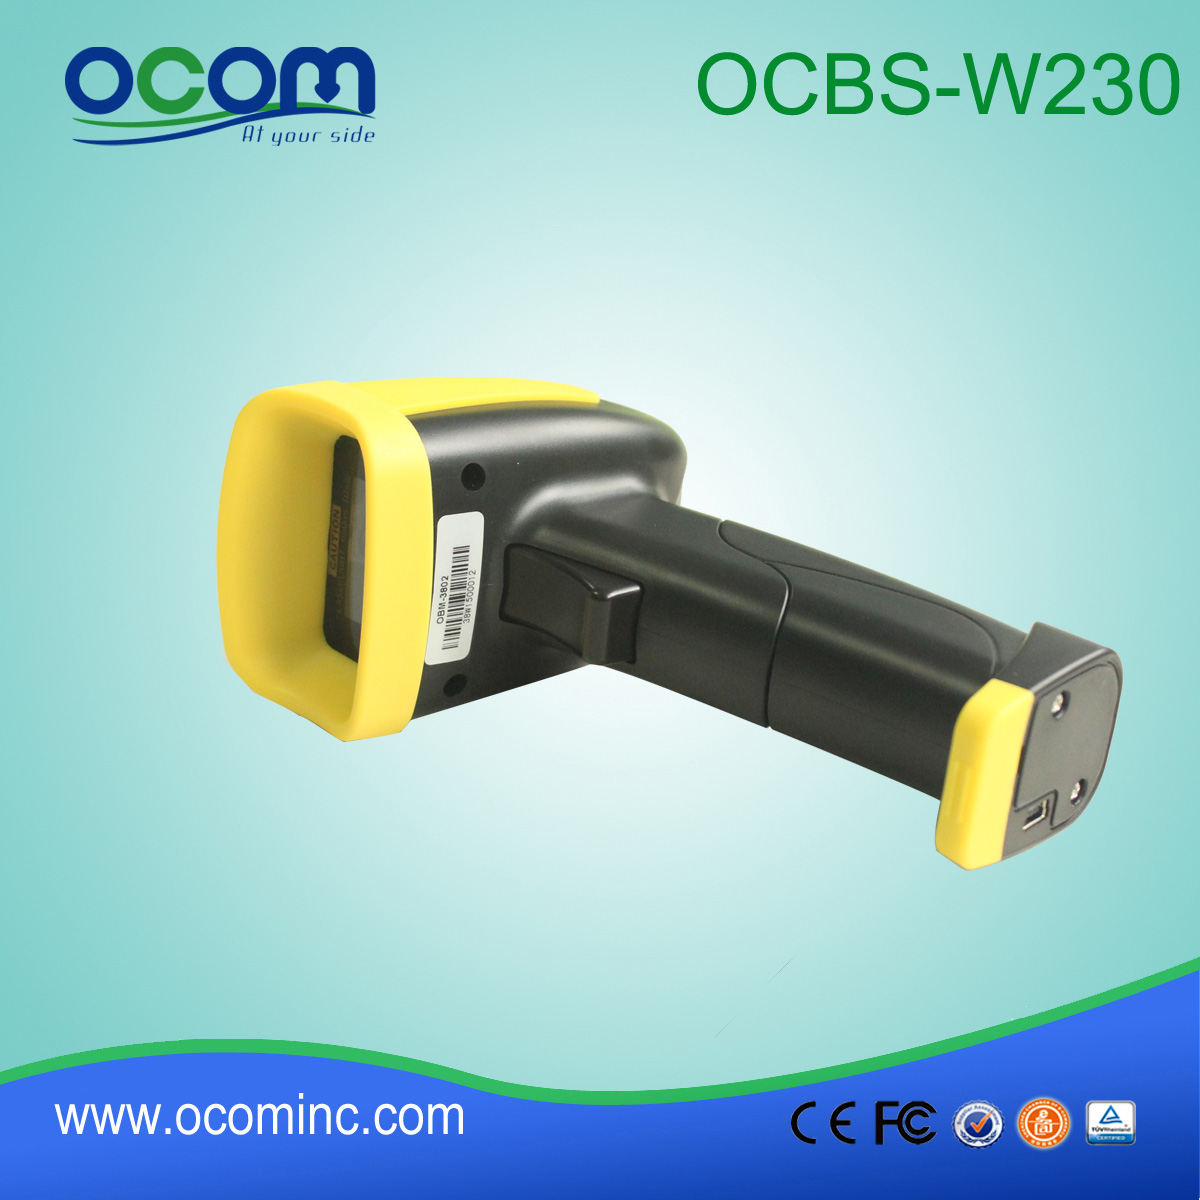 Χειρός Wireless Laser Barcode Scanner μονάδα OCBs-W230